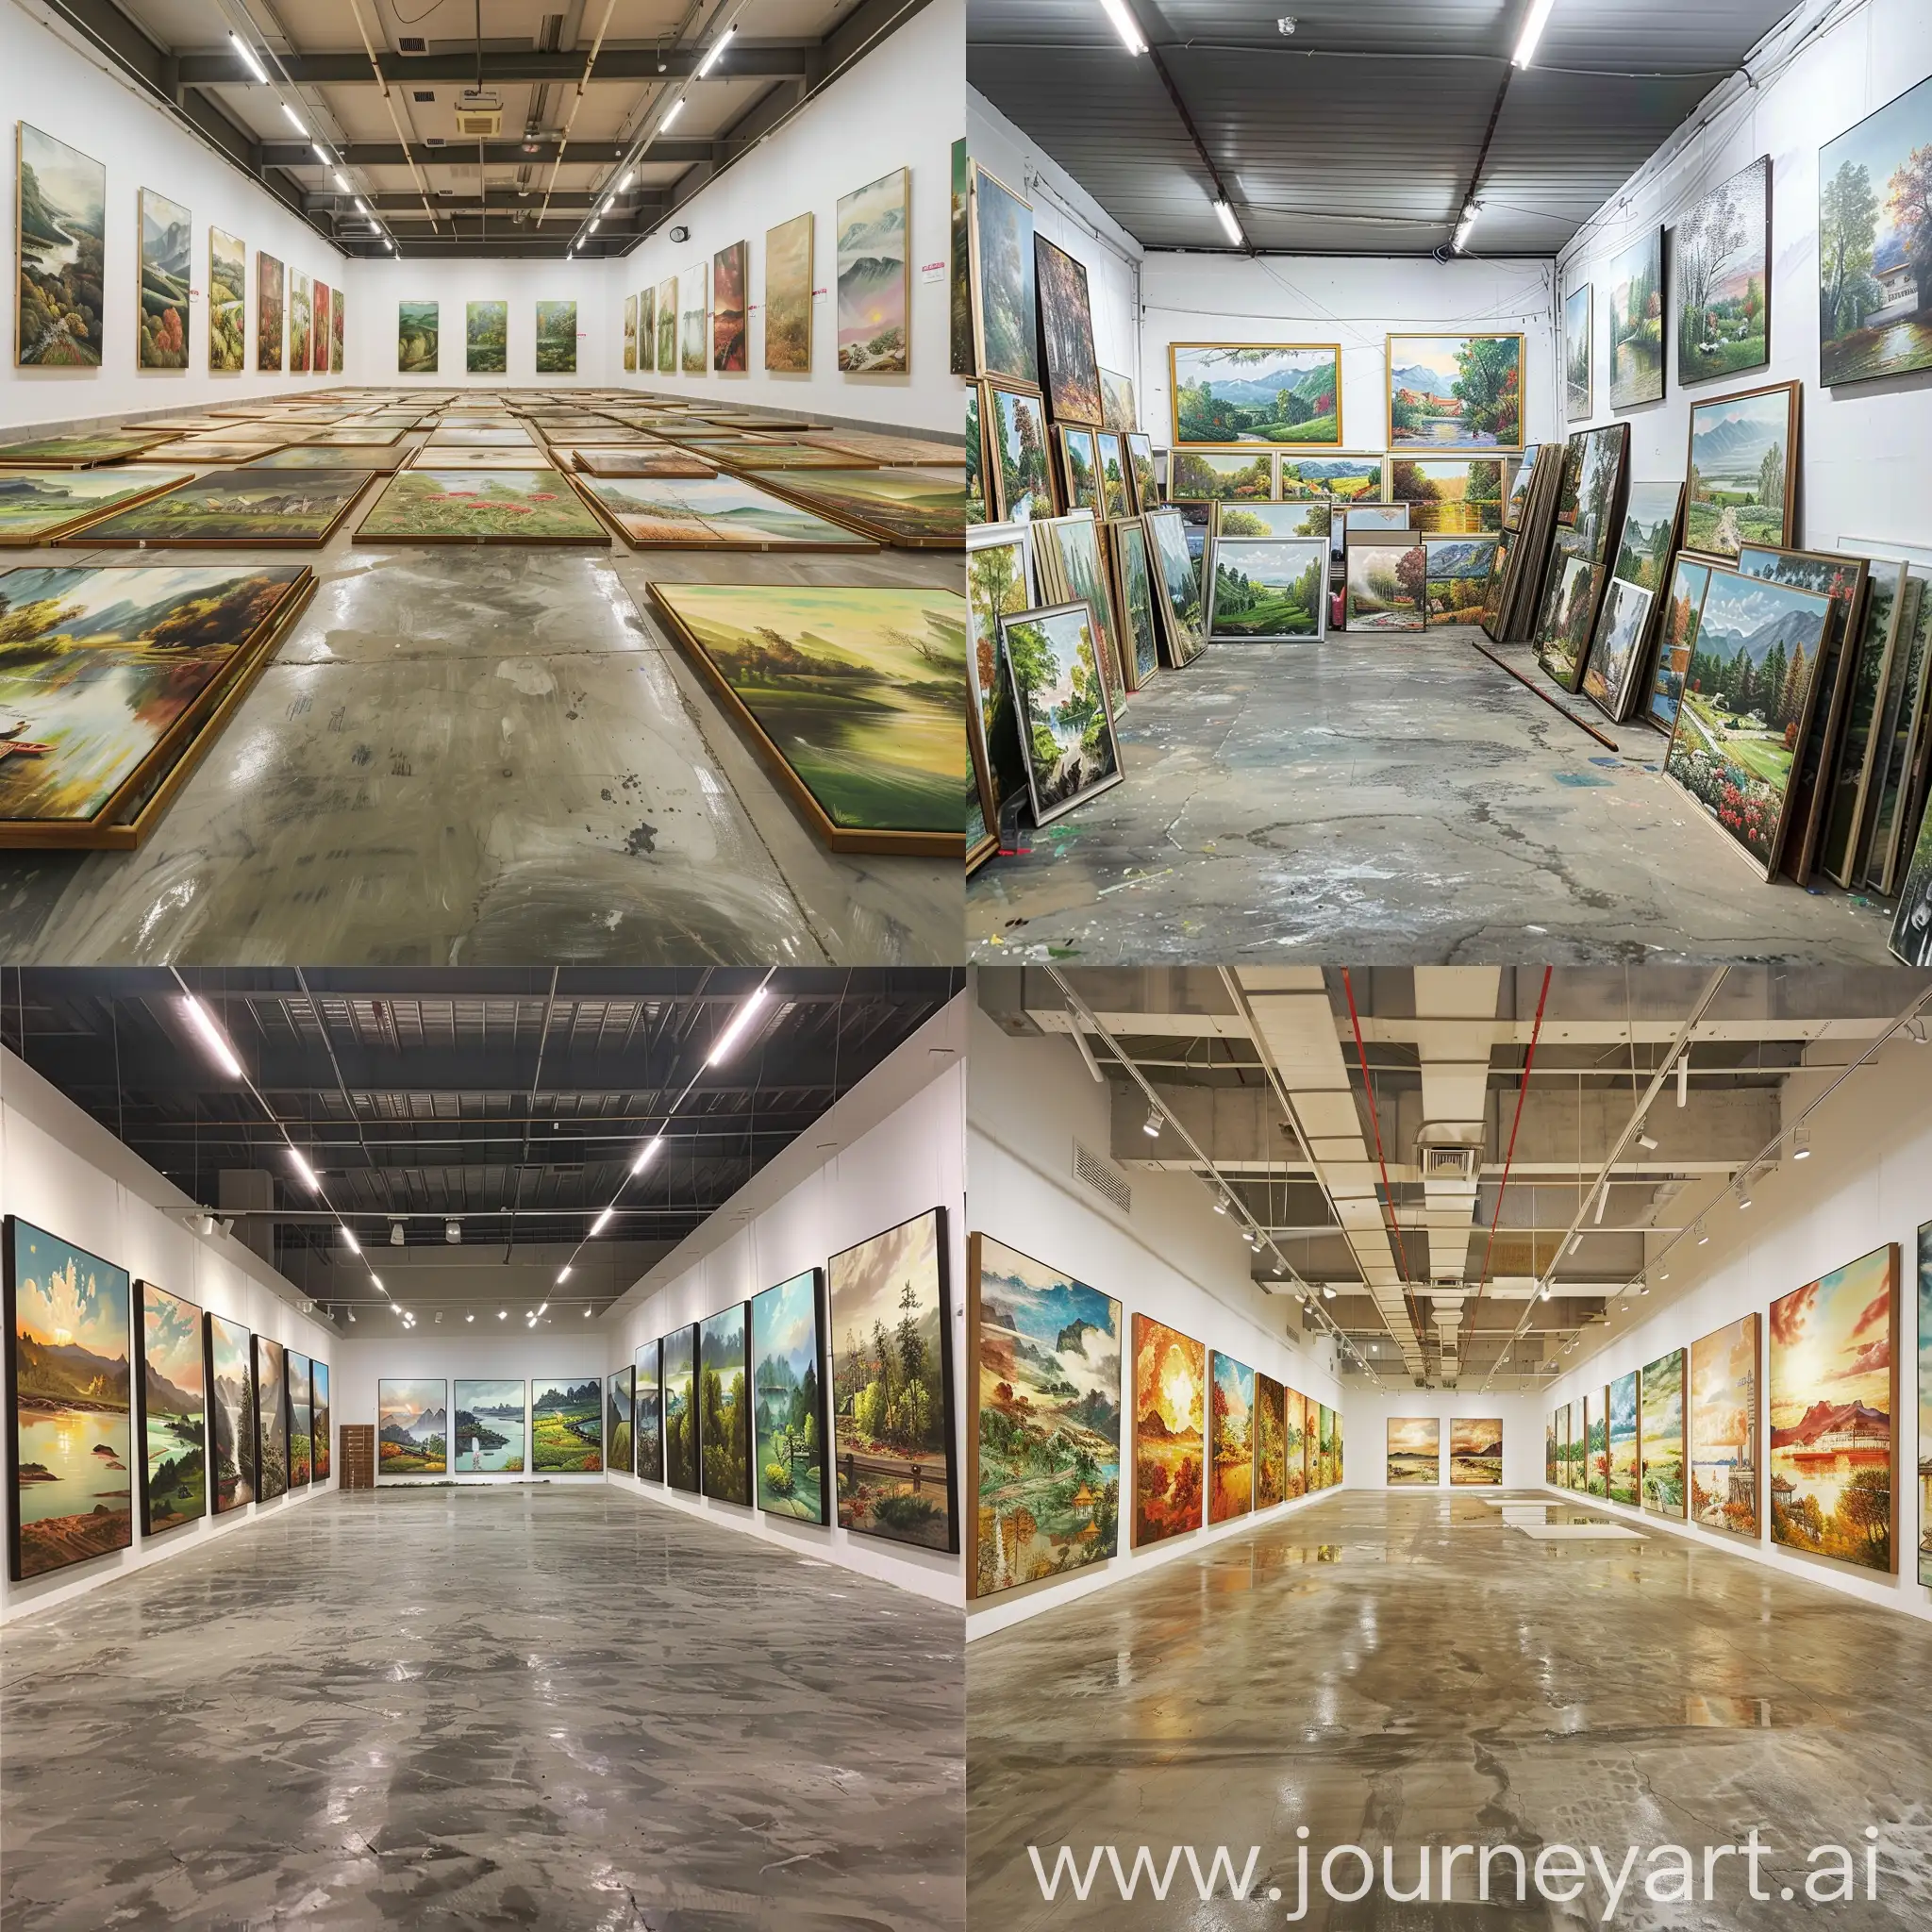 Immersive-Gallery-of-13000-HandPainted-Oil-Paintings-in-Clean-Spacious-Room